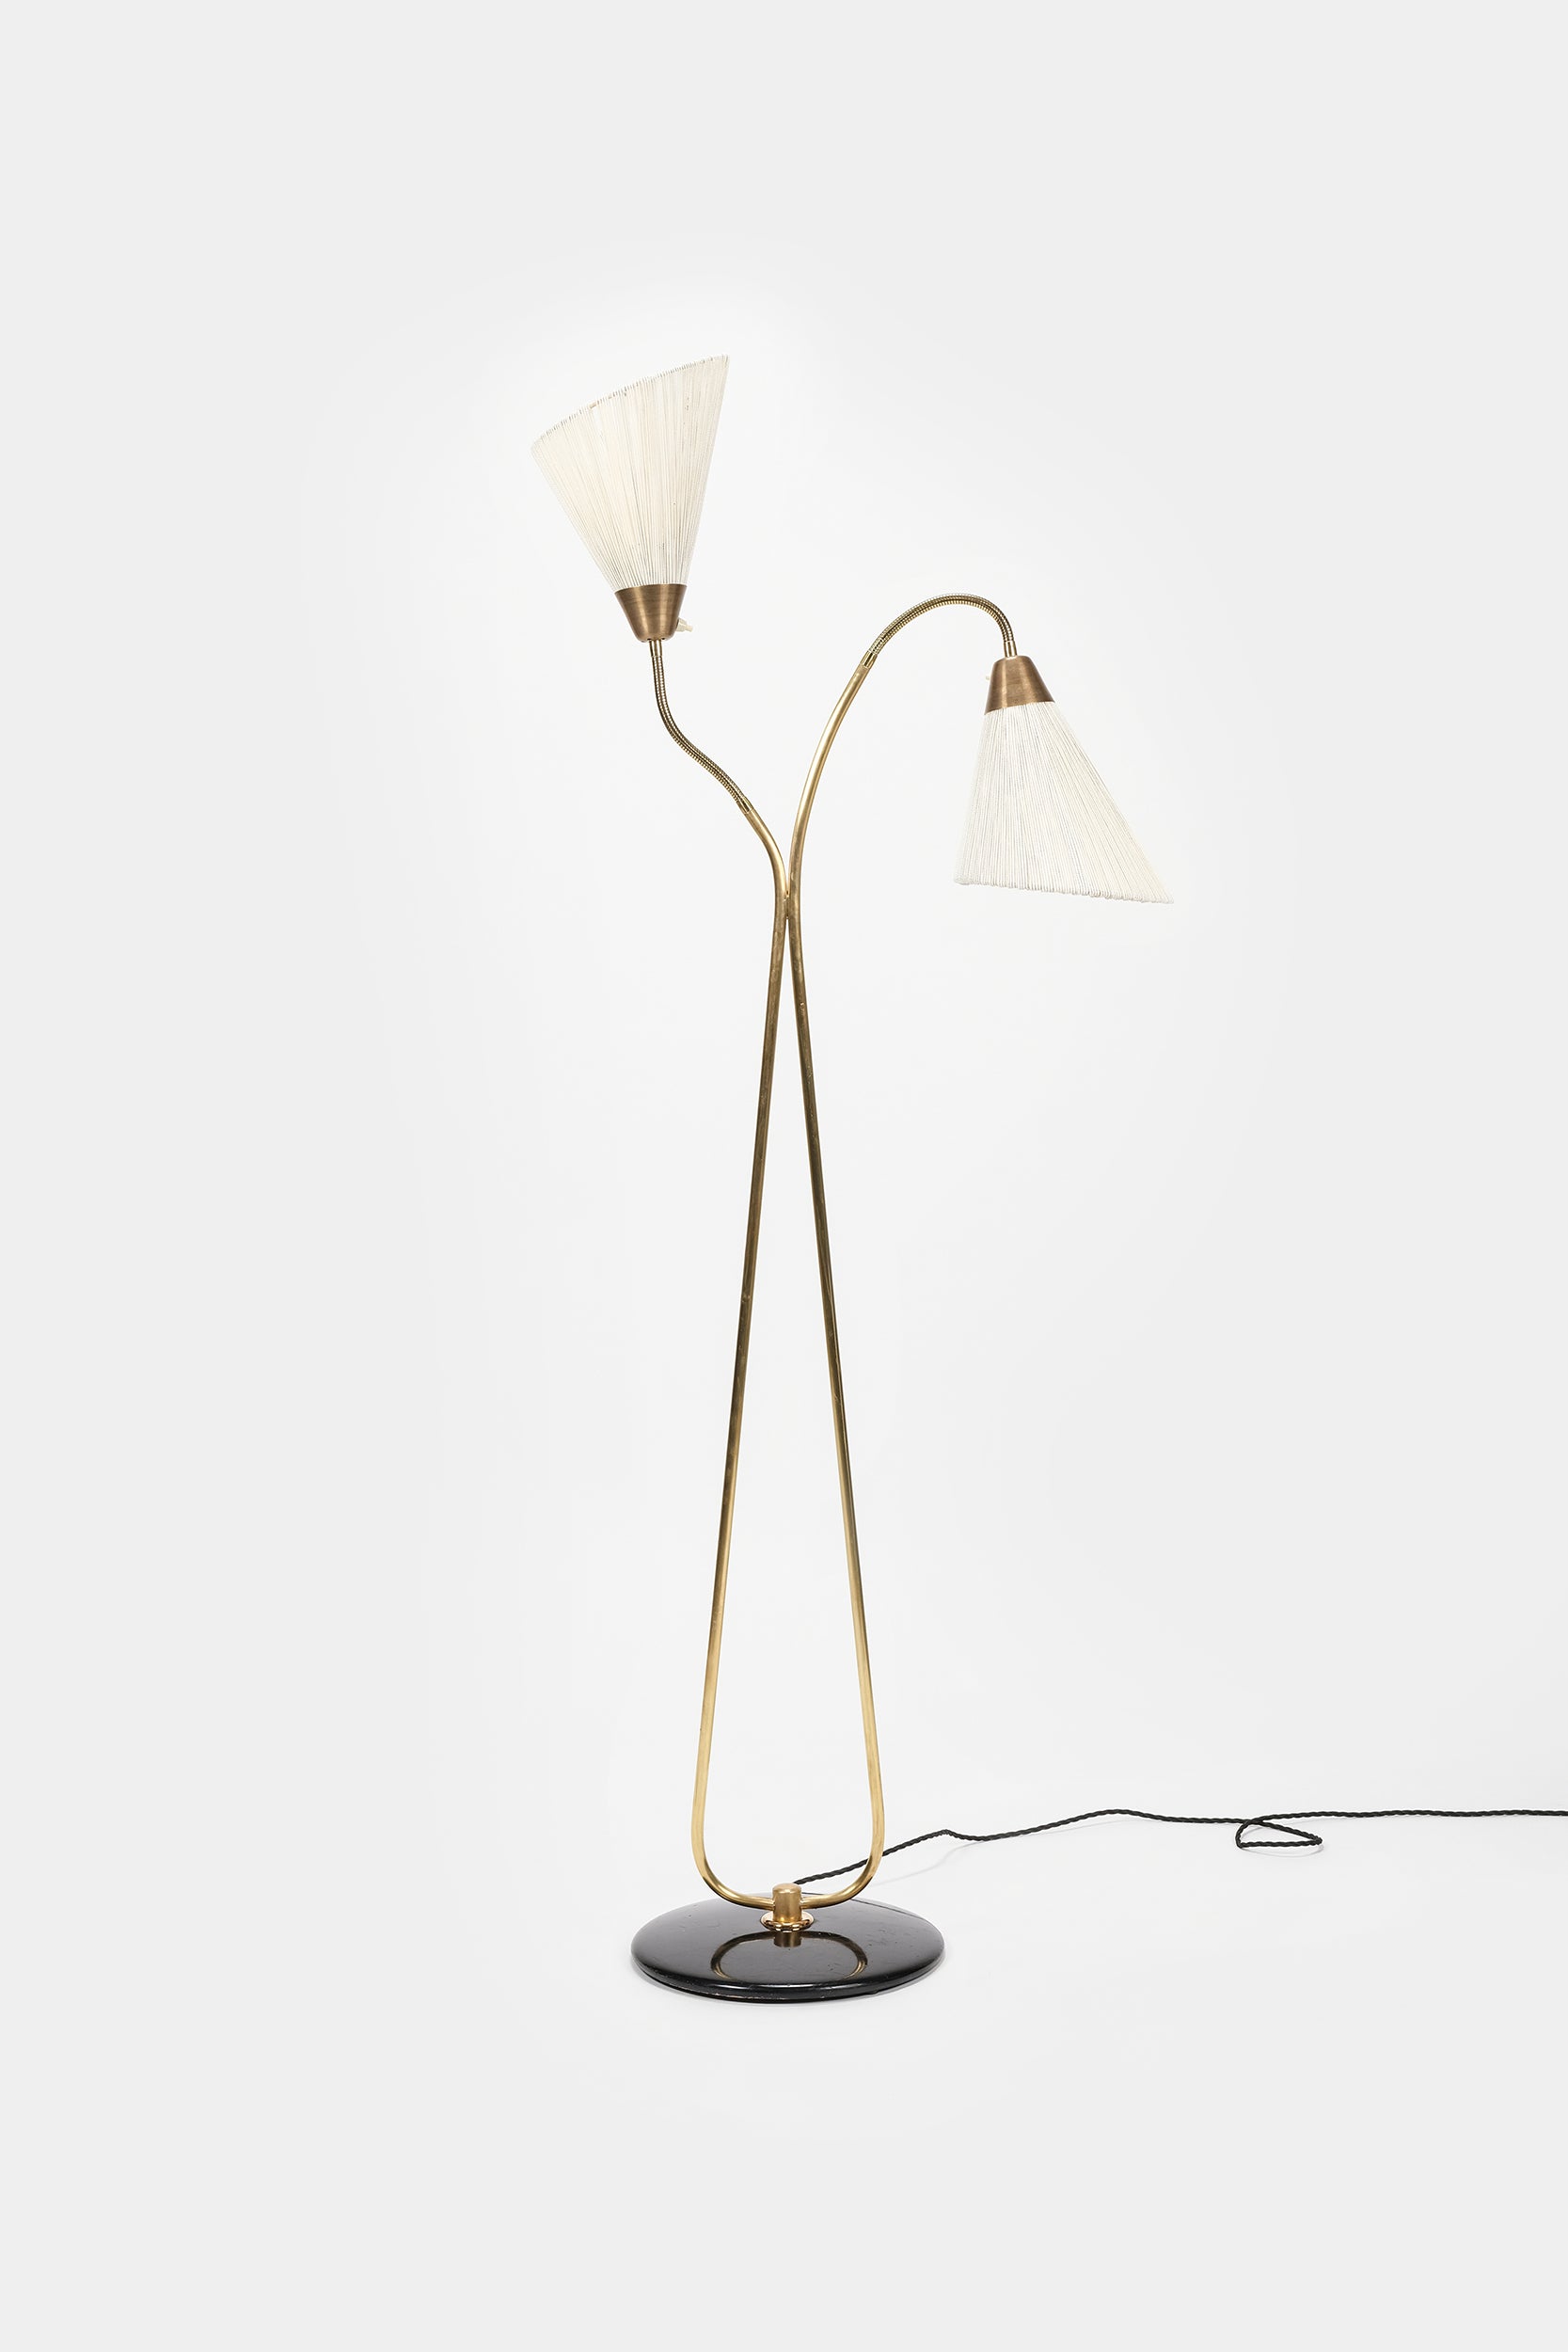 Bergbom & Co AB, Floor Lamp, Brass, Sweden, 50s